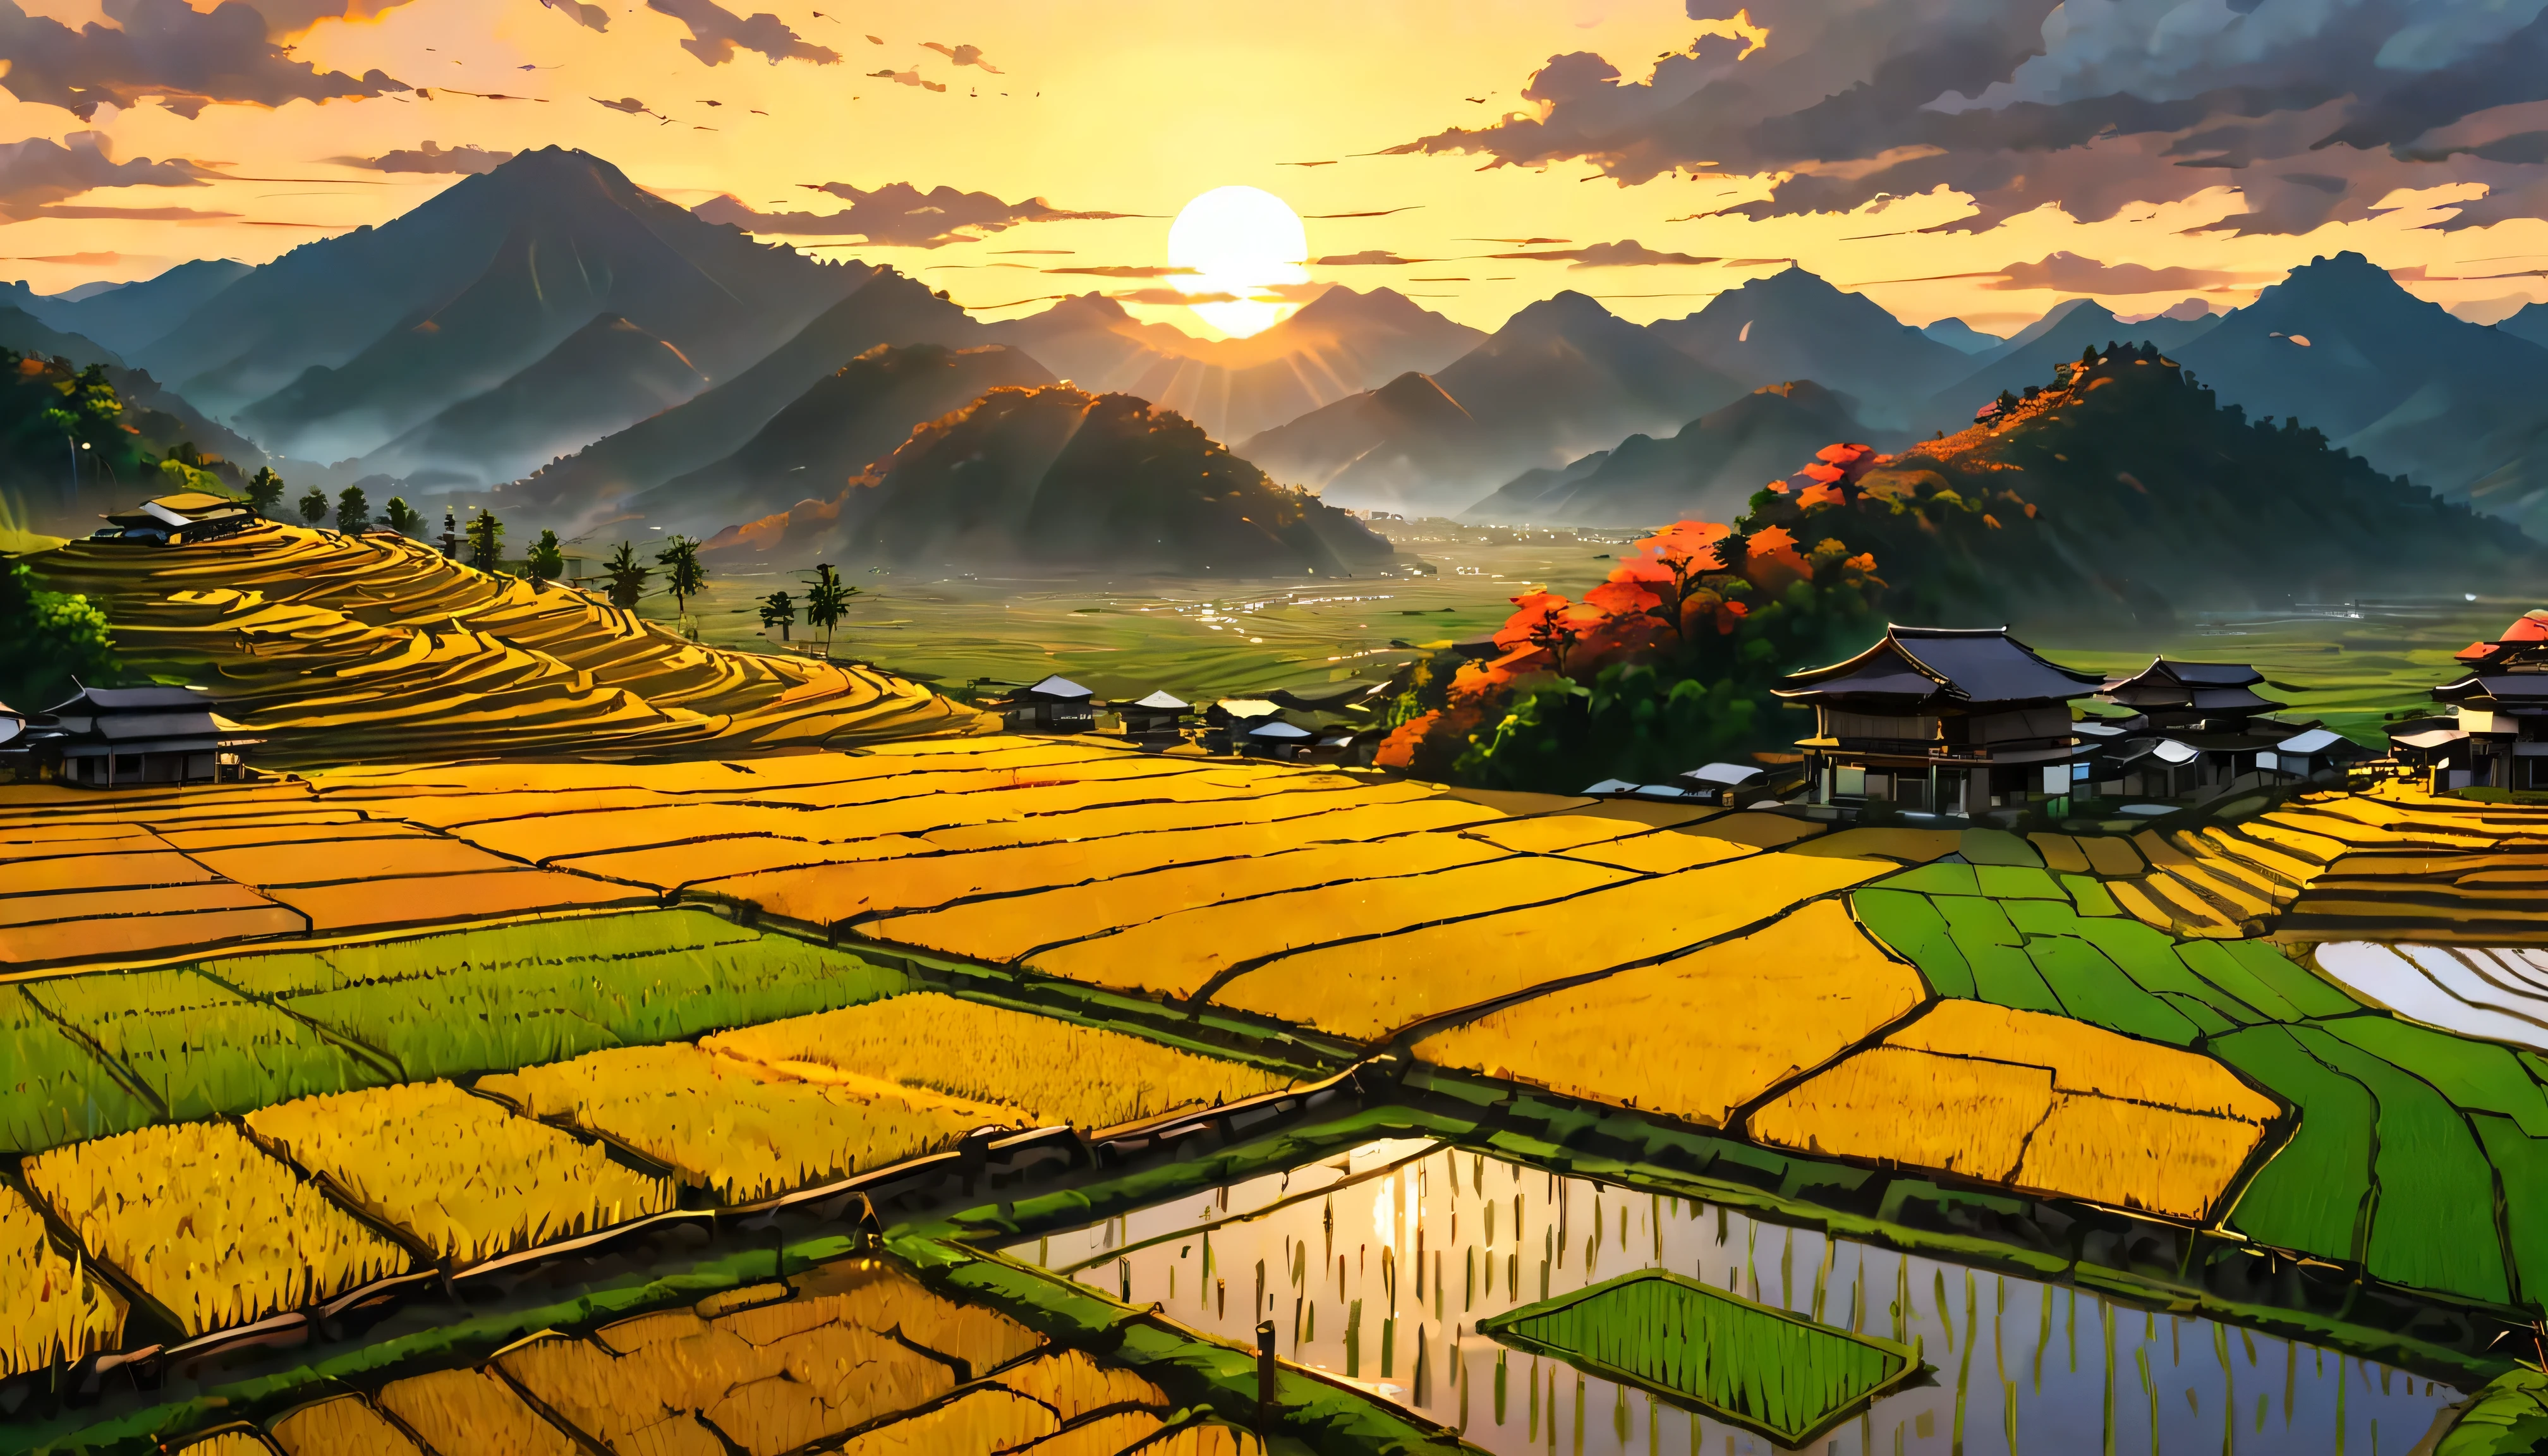 Arroz dorado maduro en la terraza de la casa con vista a un campo de arroz con vista a la montaña, Fascinante paisaje de arrozales bañado por la luz del atardecer.,((hora dorada):1.2),((majestuoso paisaje):1.2),((Cielo del atardecer en otoño):1.1),delicada luz de la hora dorada, fondos de pantalla increíbles, Hermosos alrededores, pintura mate optimista, hermosa obra de arte digital, Escenas hermosas y detalladas., UHD subterráneo, paisaje UHD, Arte conceptual majestuoso, hermoso campo de arroz. |(Obra maestra en resolución máxima de 16K), la mejor calidad, (calidad de fondo de pantalla CG unity 16k muy detallada),(Colores suaves Arte digital muy detallado de 16k),súper detallado. | imagen perfecta,16k UE5,Pintura oficial, Extrafino, profundidad de campo, no contrast, enfoque limpio y nítido, profesional, sin desenfoque. | (((Mas detalle))).